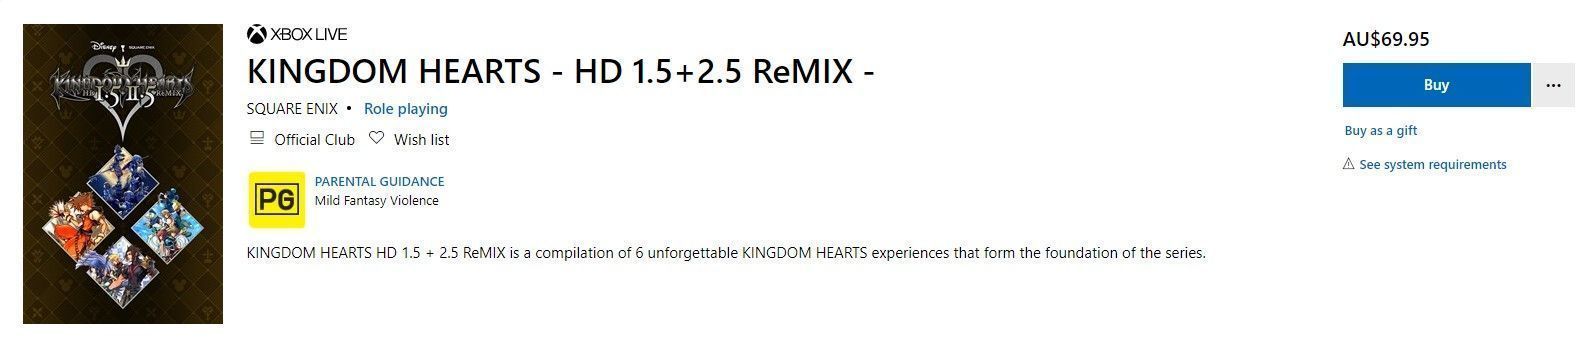 重溫回憶 《王國之心》HD高清復刻系列登陸Xbox王國之心